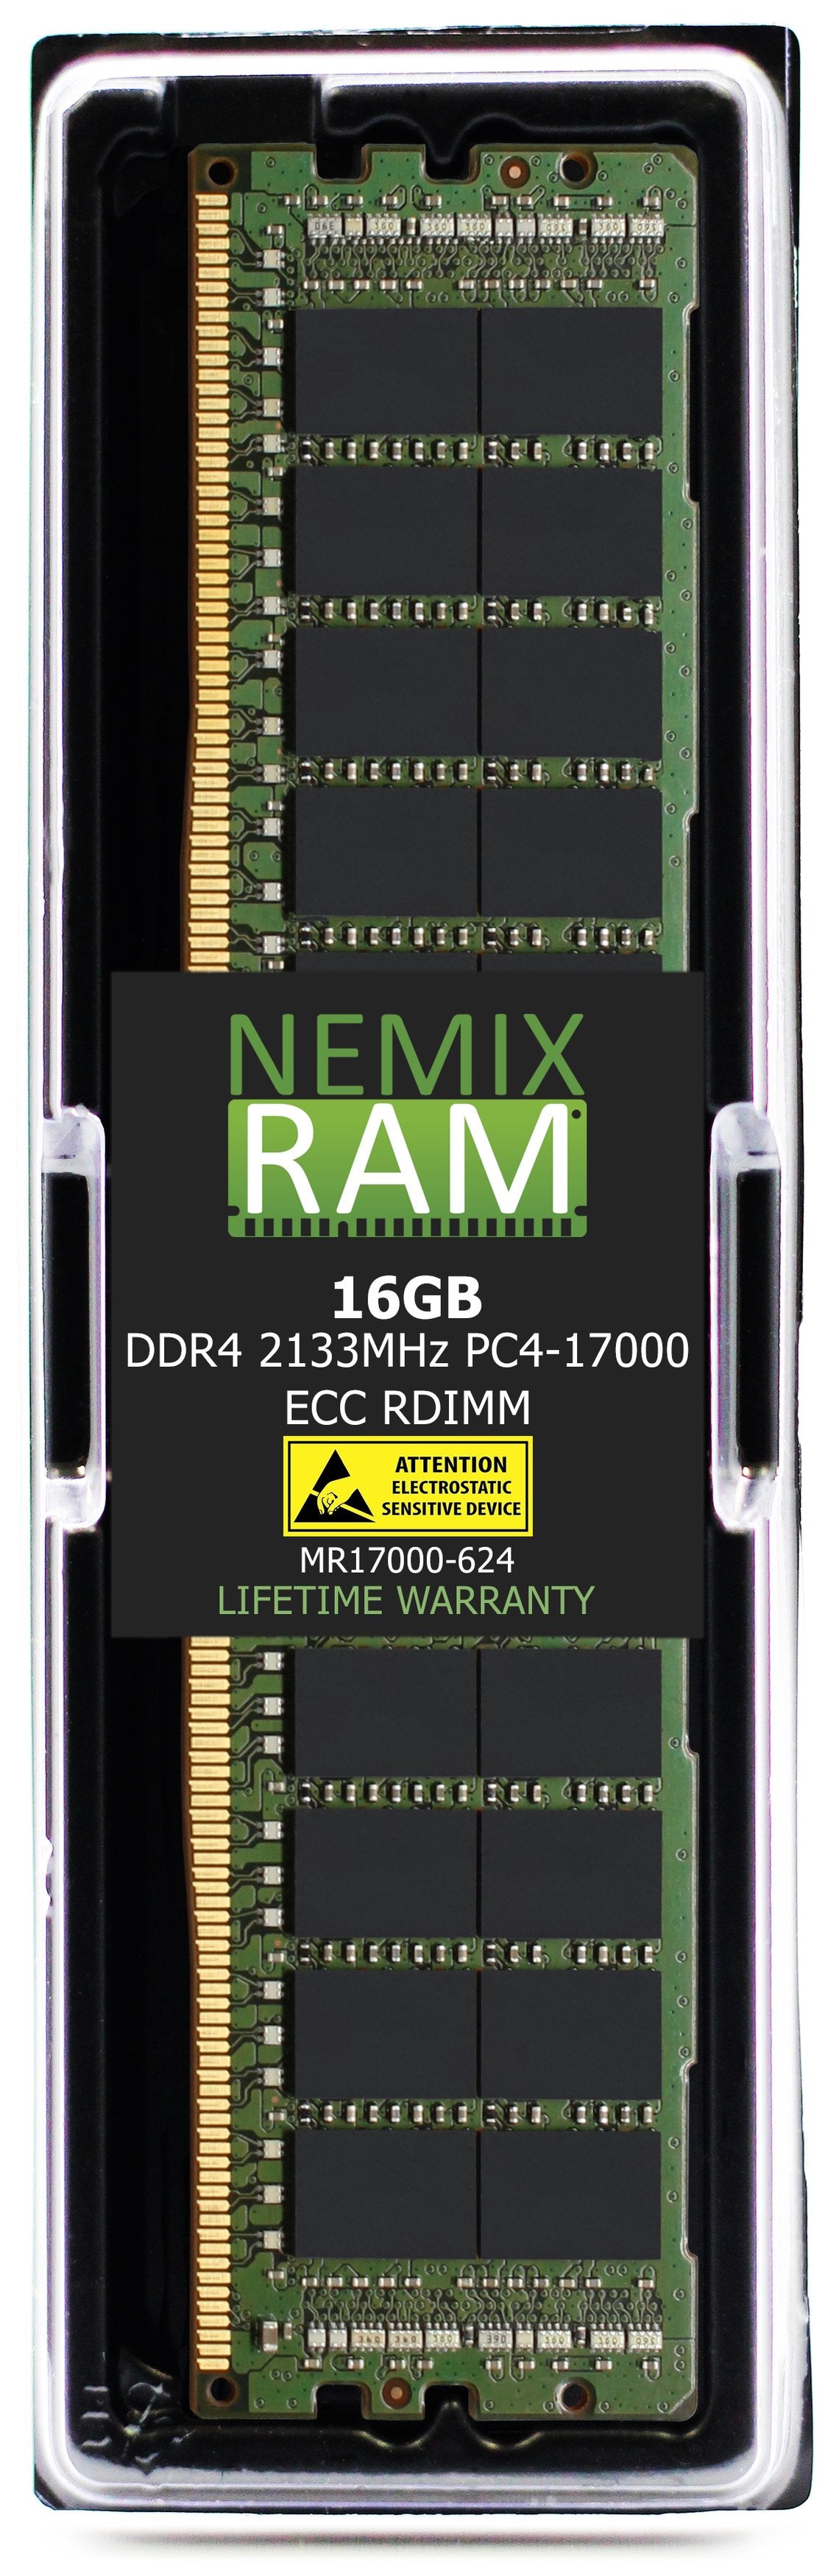 16GB DDR4 2133HZ PC4-17000 RDIMM Compatible with Supermicro MEM-DR416L-SL01-ER21